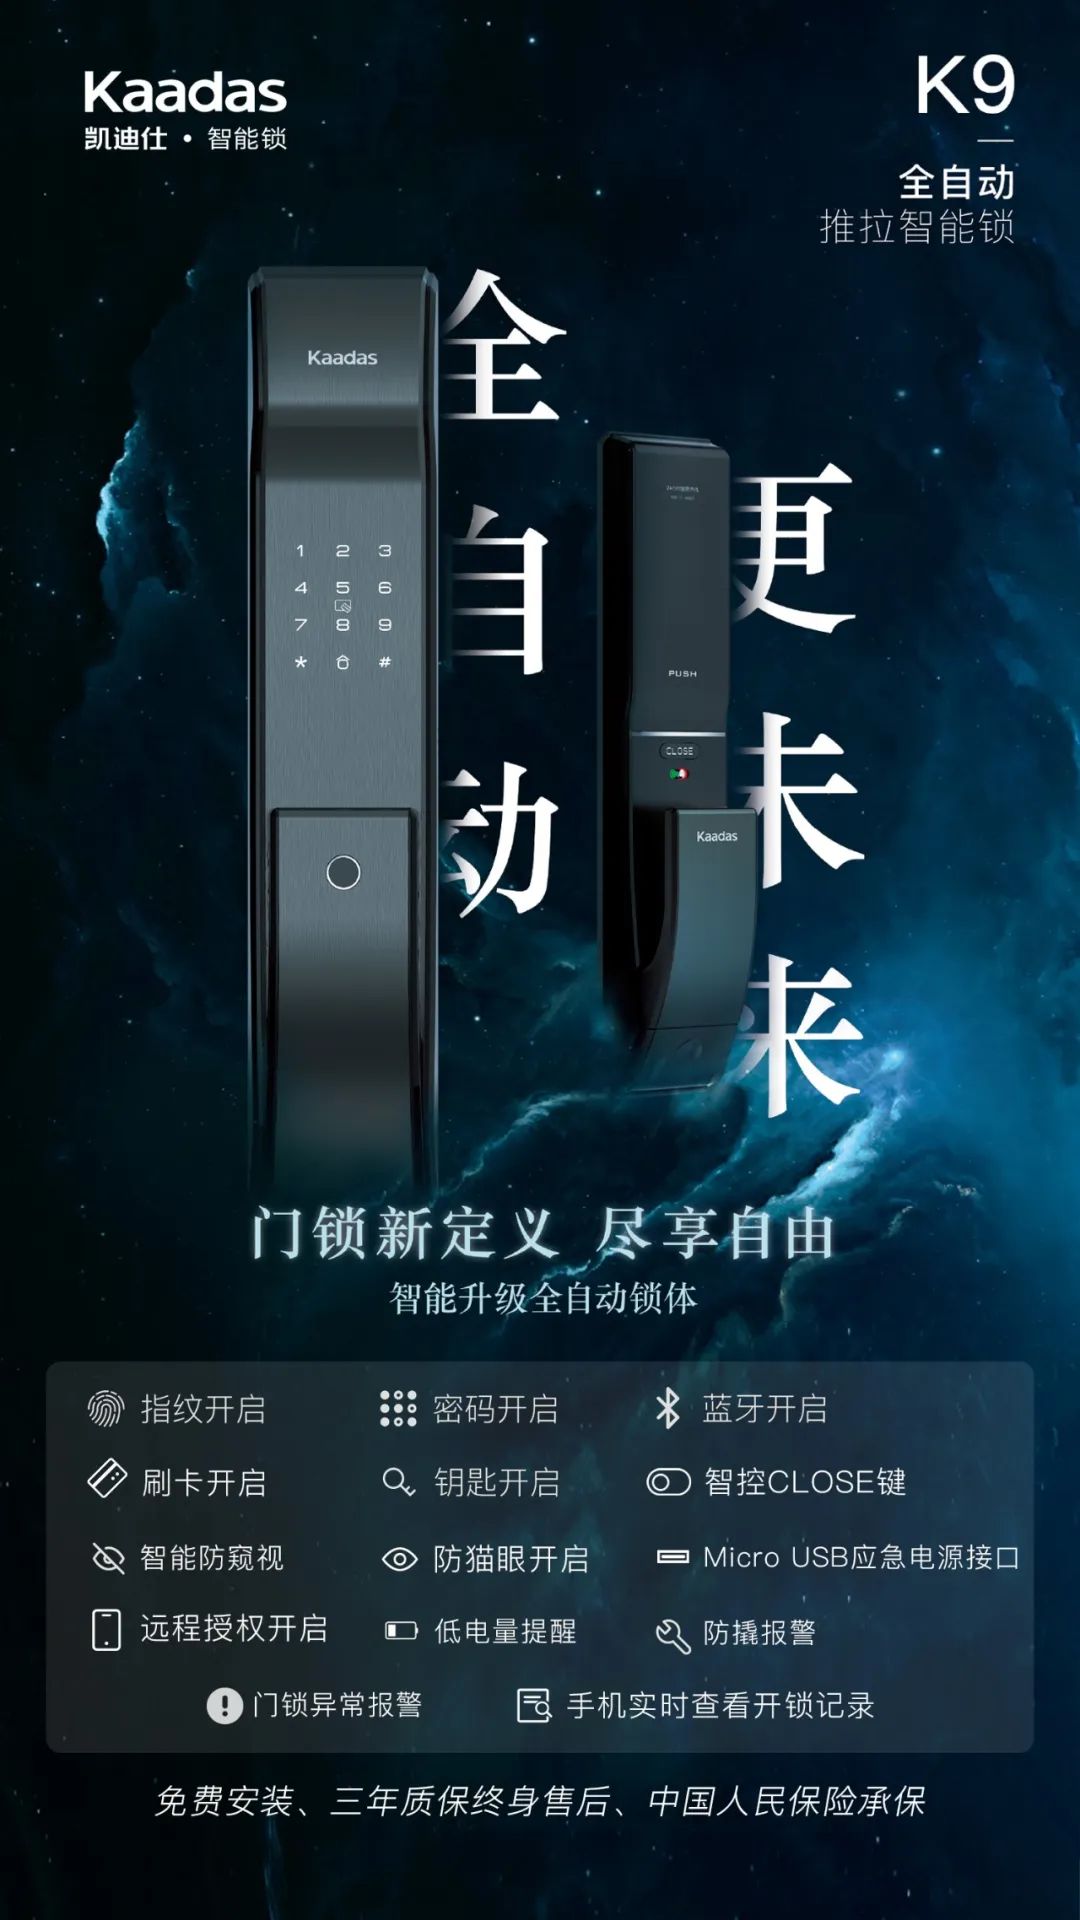 卖爆啦！！刘涛直播首秀3次推荐凯迪仕智能锁，销售额超1000万